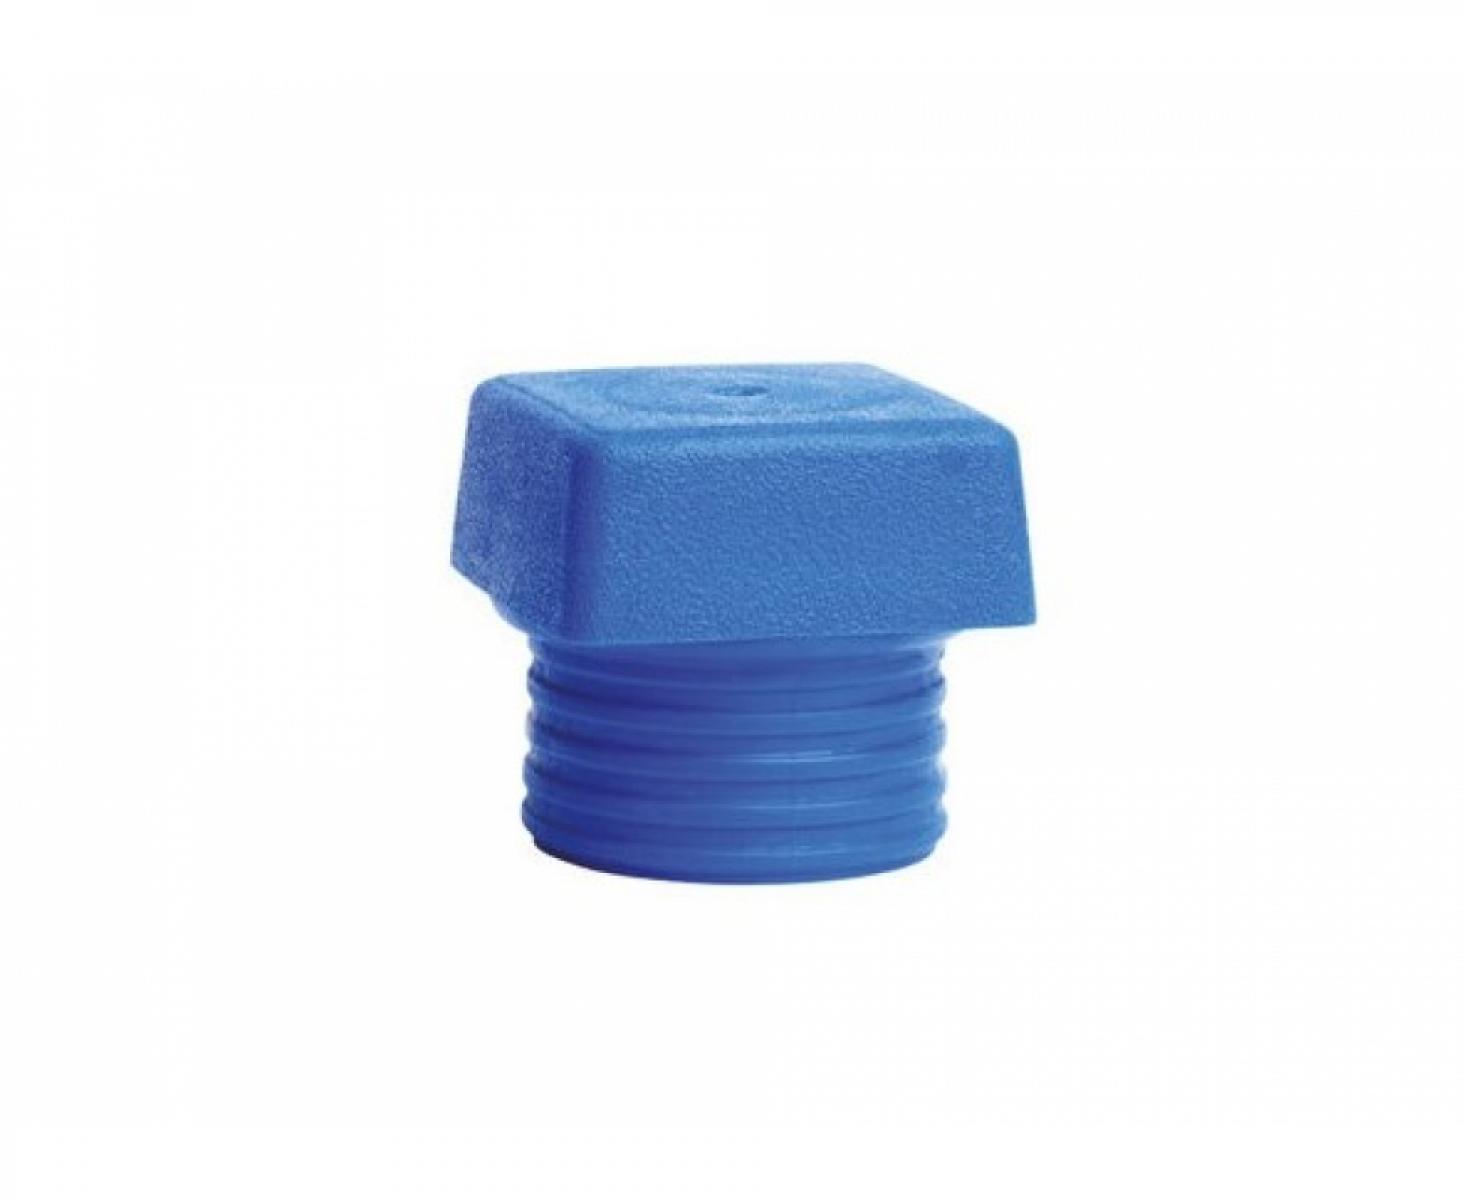 Четырехгранная головка синяя для молотка Wiha Safety 833-1 26673 из мягкого эластомера